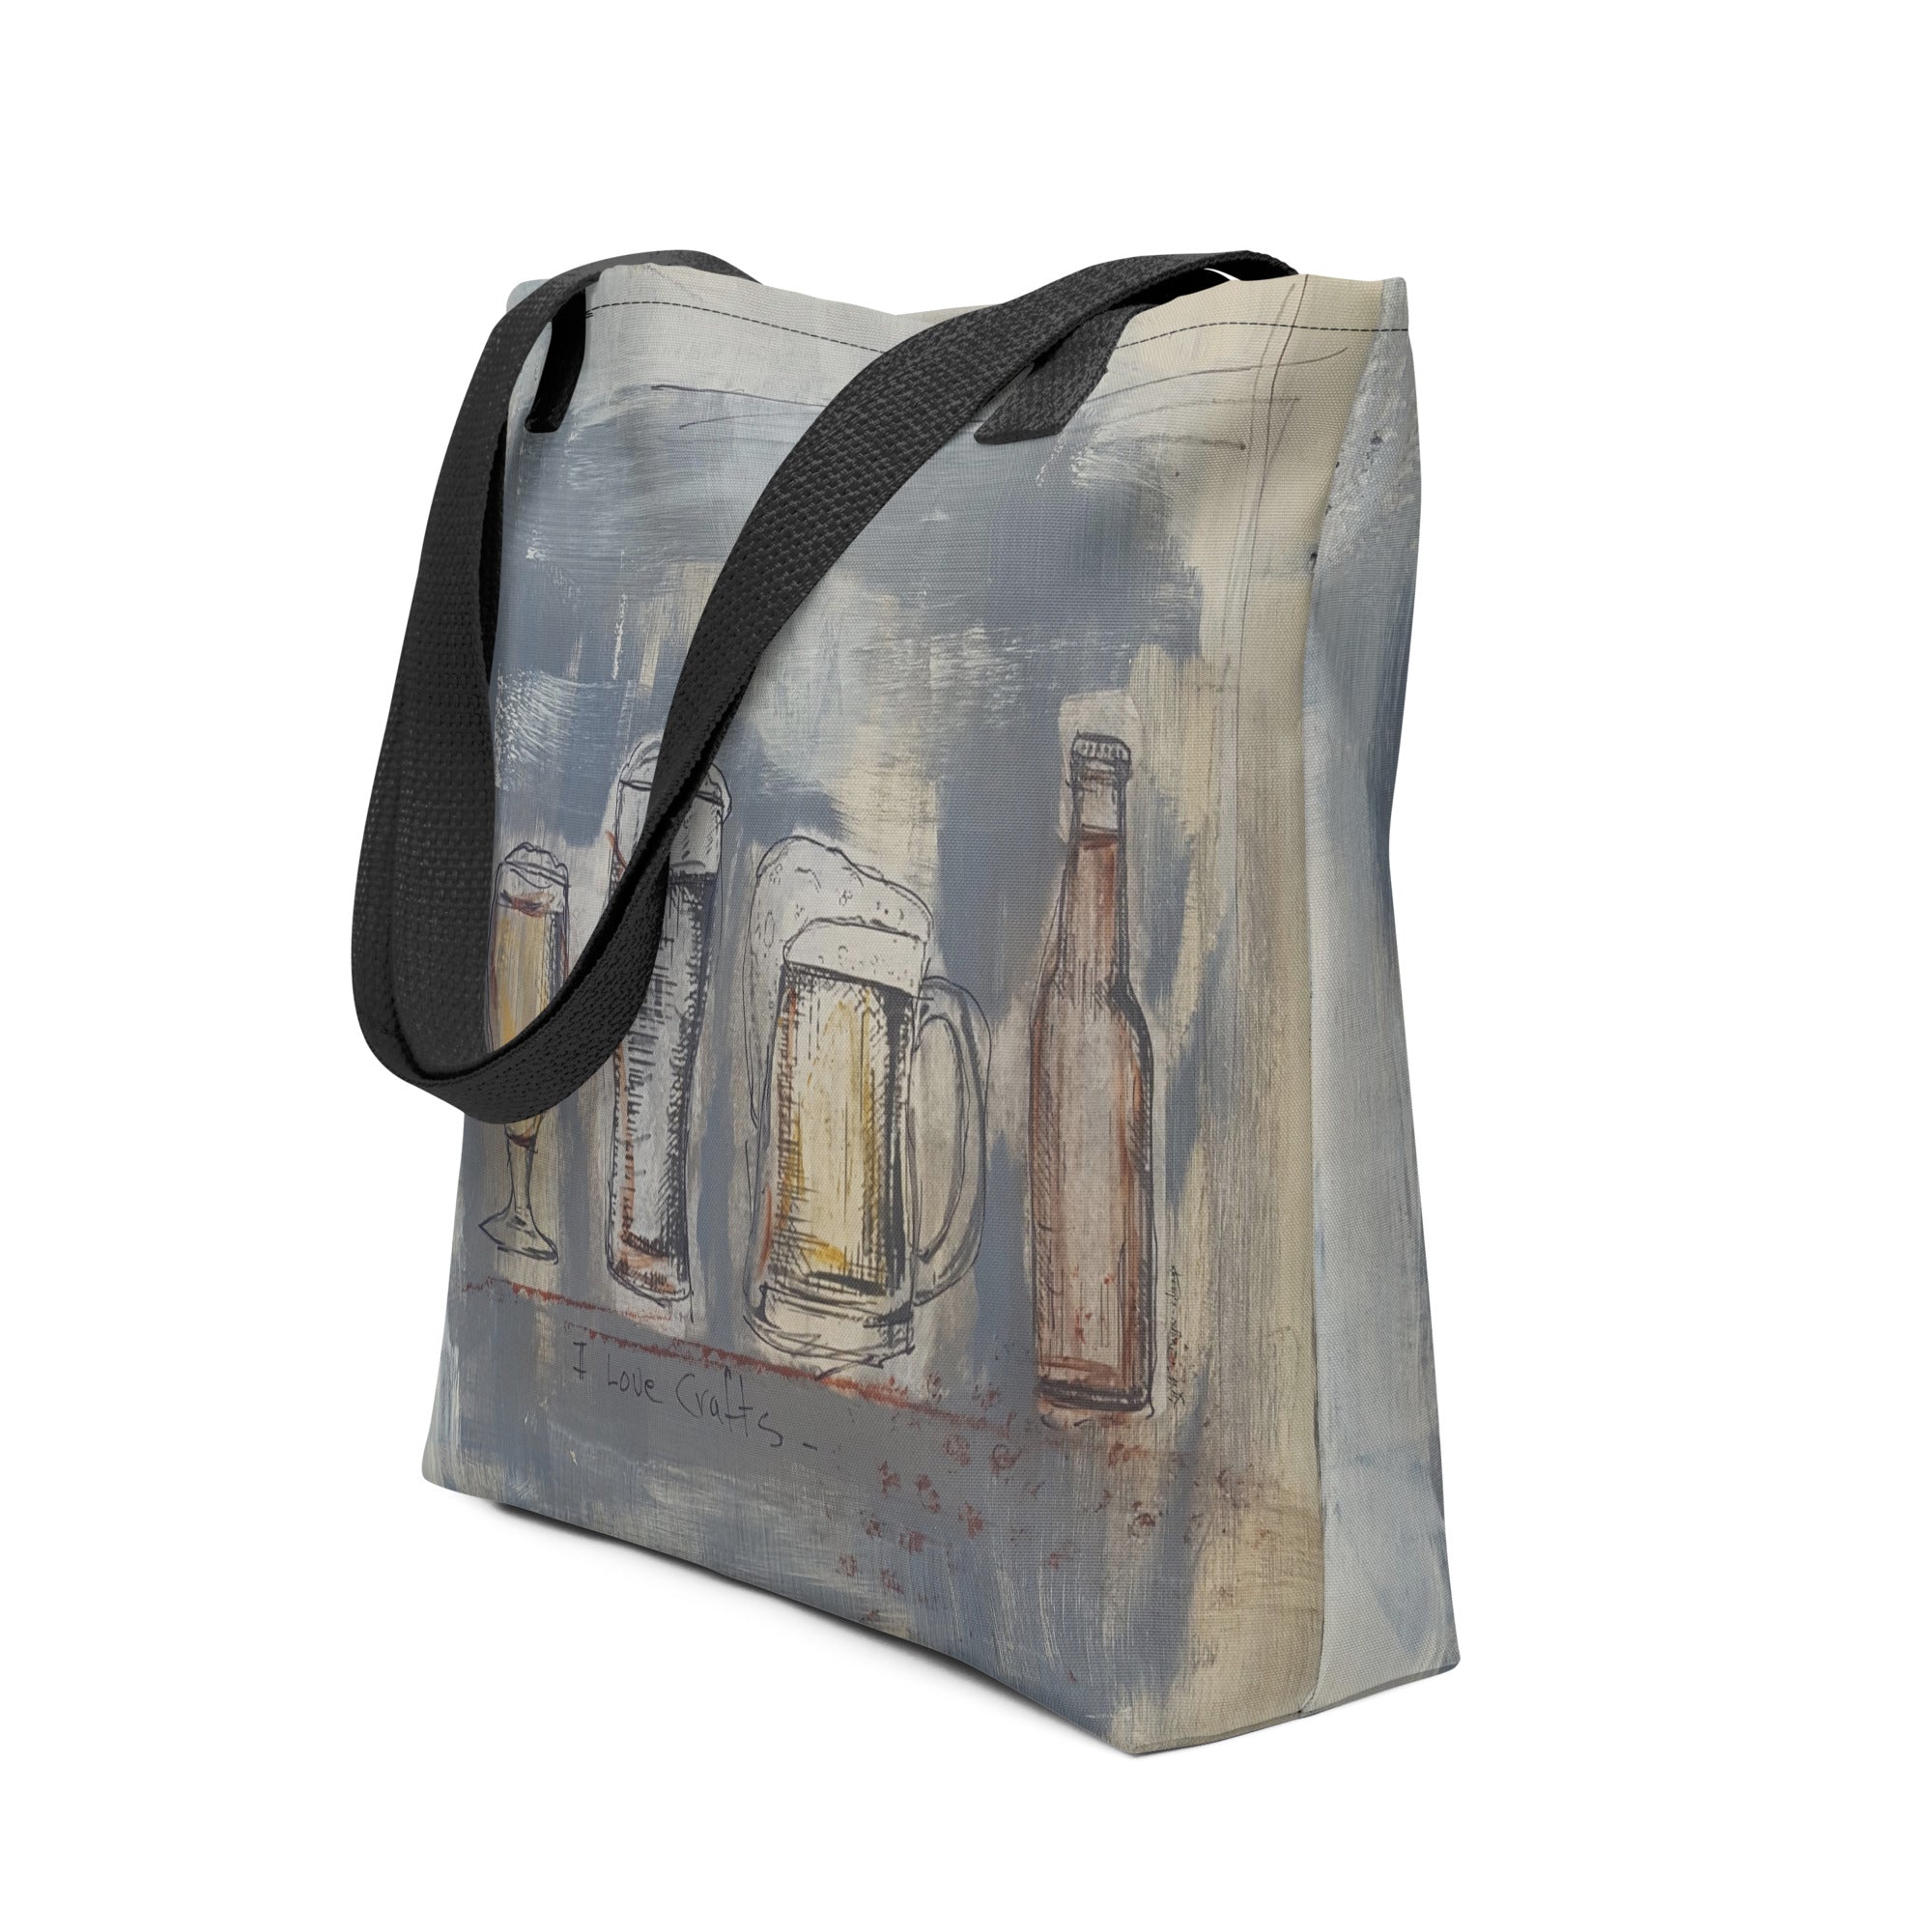 I Love Crafts - Artful Tote Bag